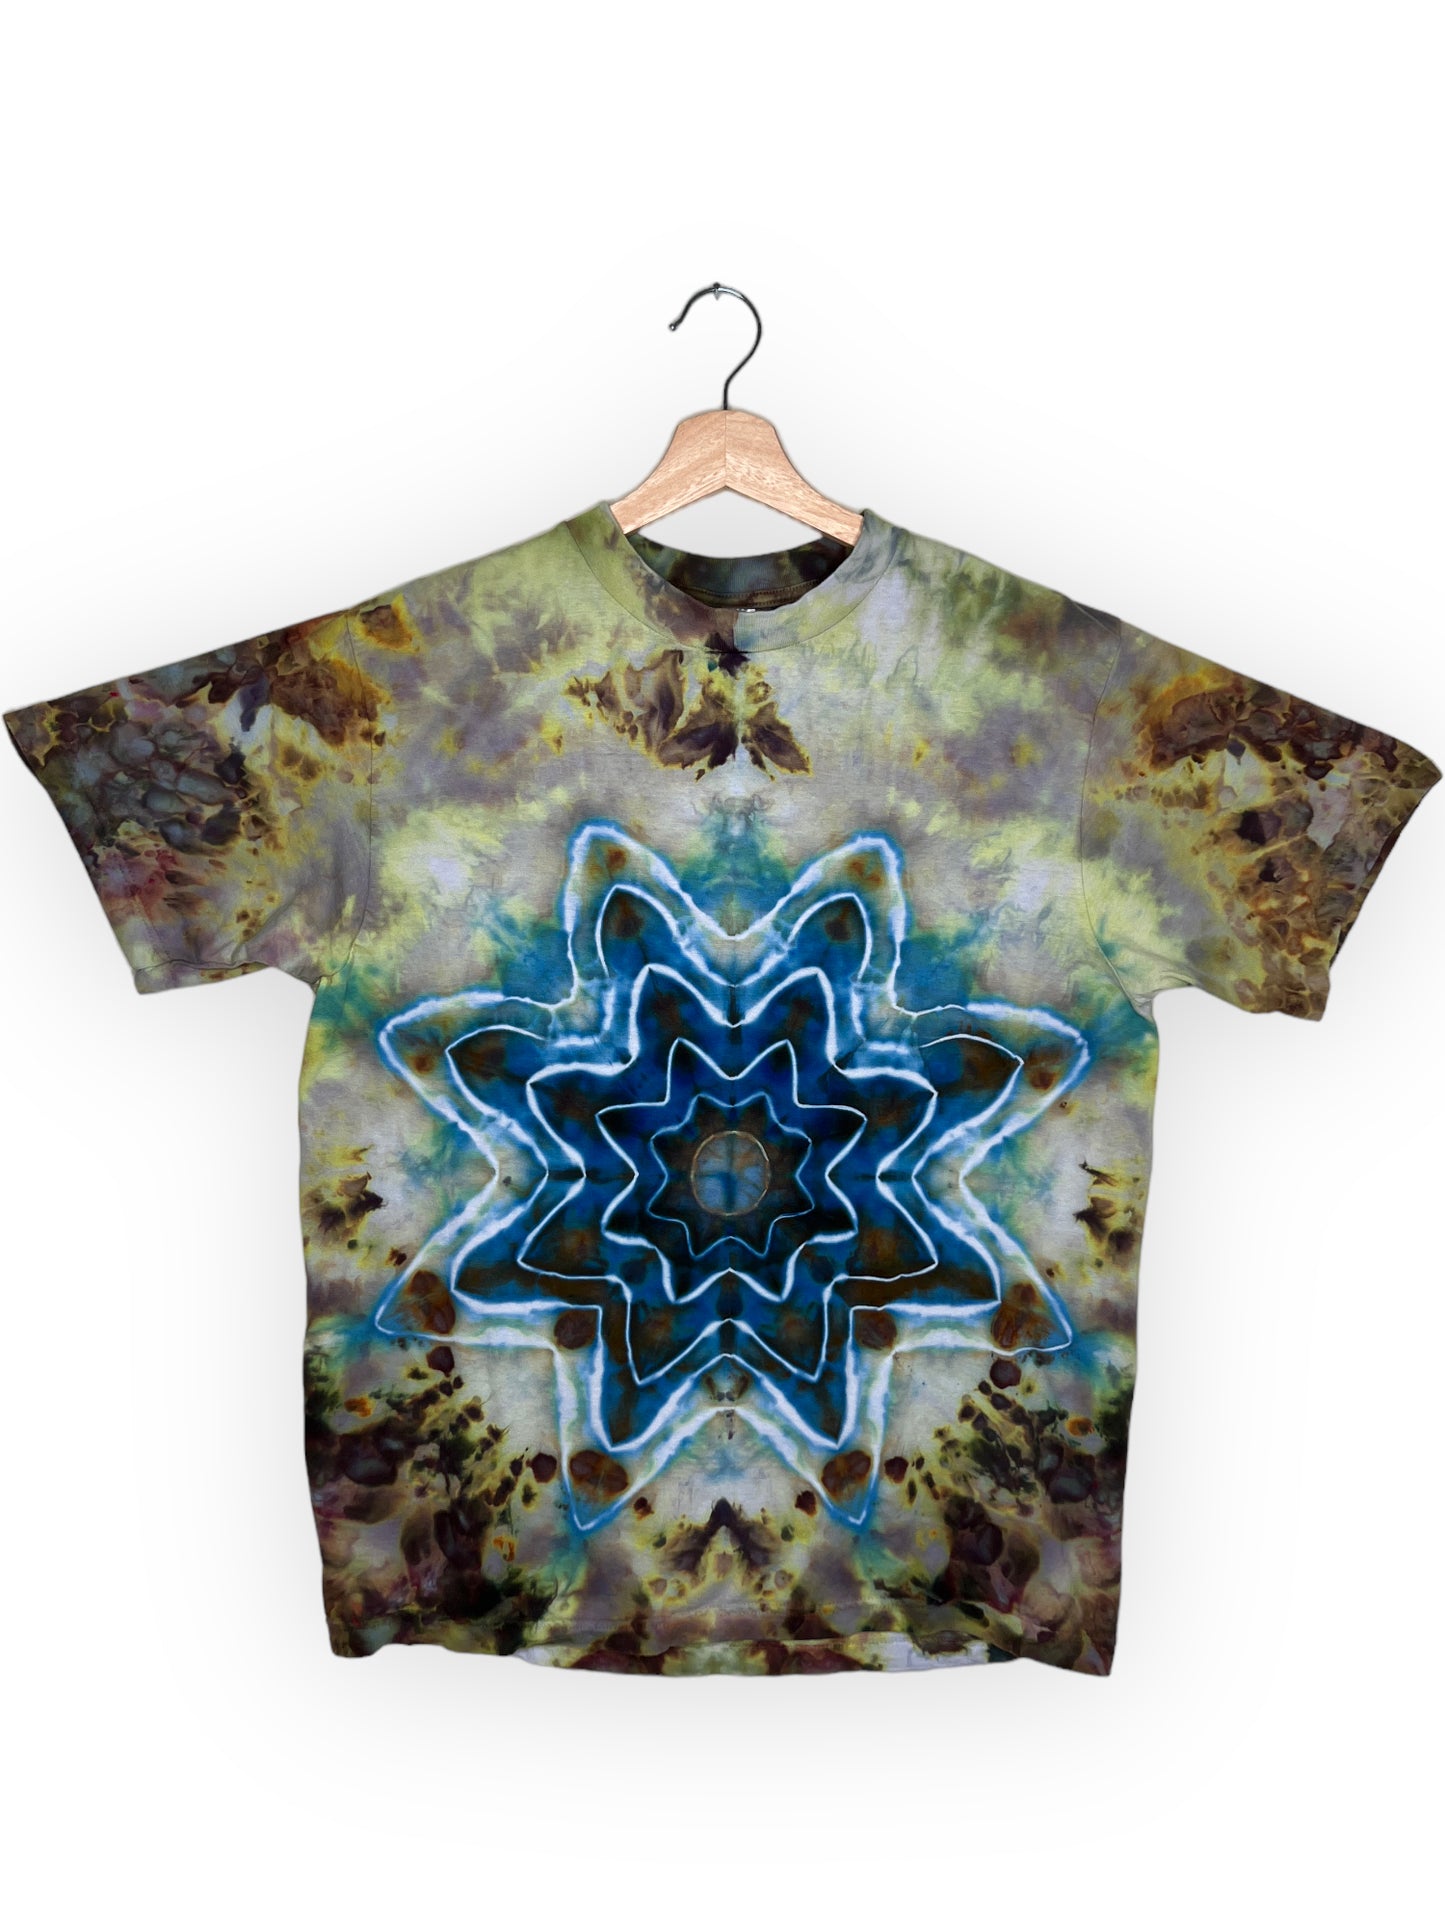 Bluebird Ronstar Mandala T-Shirt (Medium)